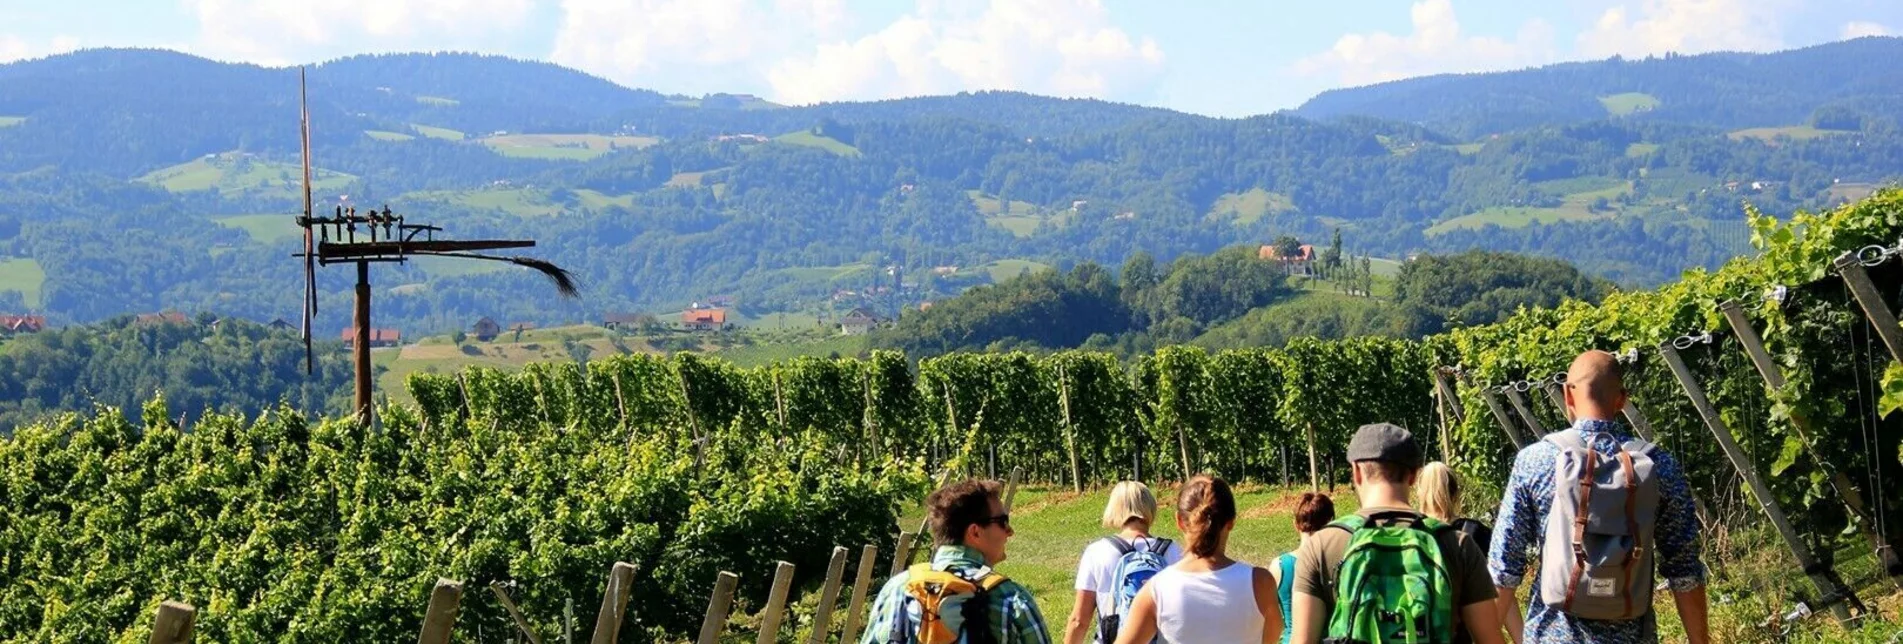 Hiking route Kulinarische Weinbergwanderung – Tour 15 lt. WK „Von der Alm zum Wein“ - Touren-Impression #1 | © Südsteiermark